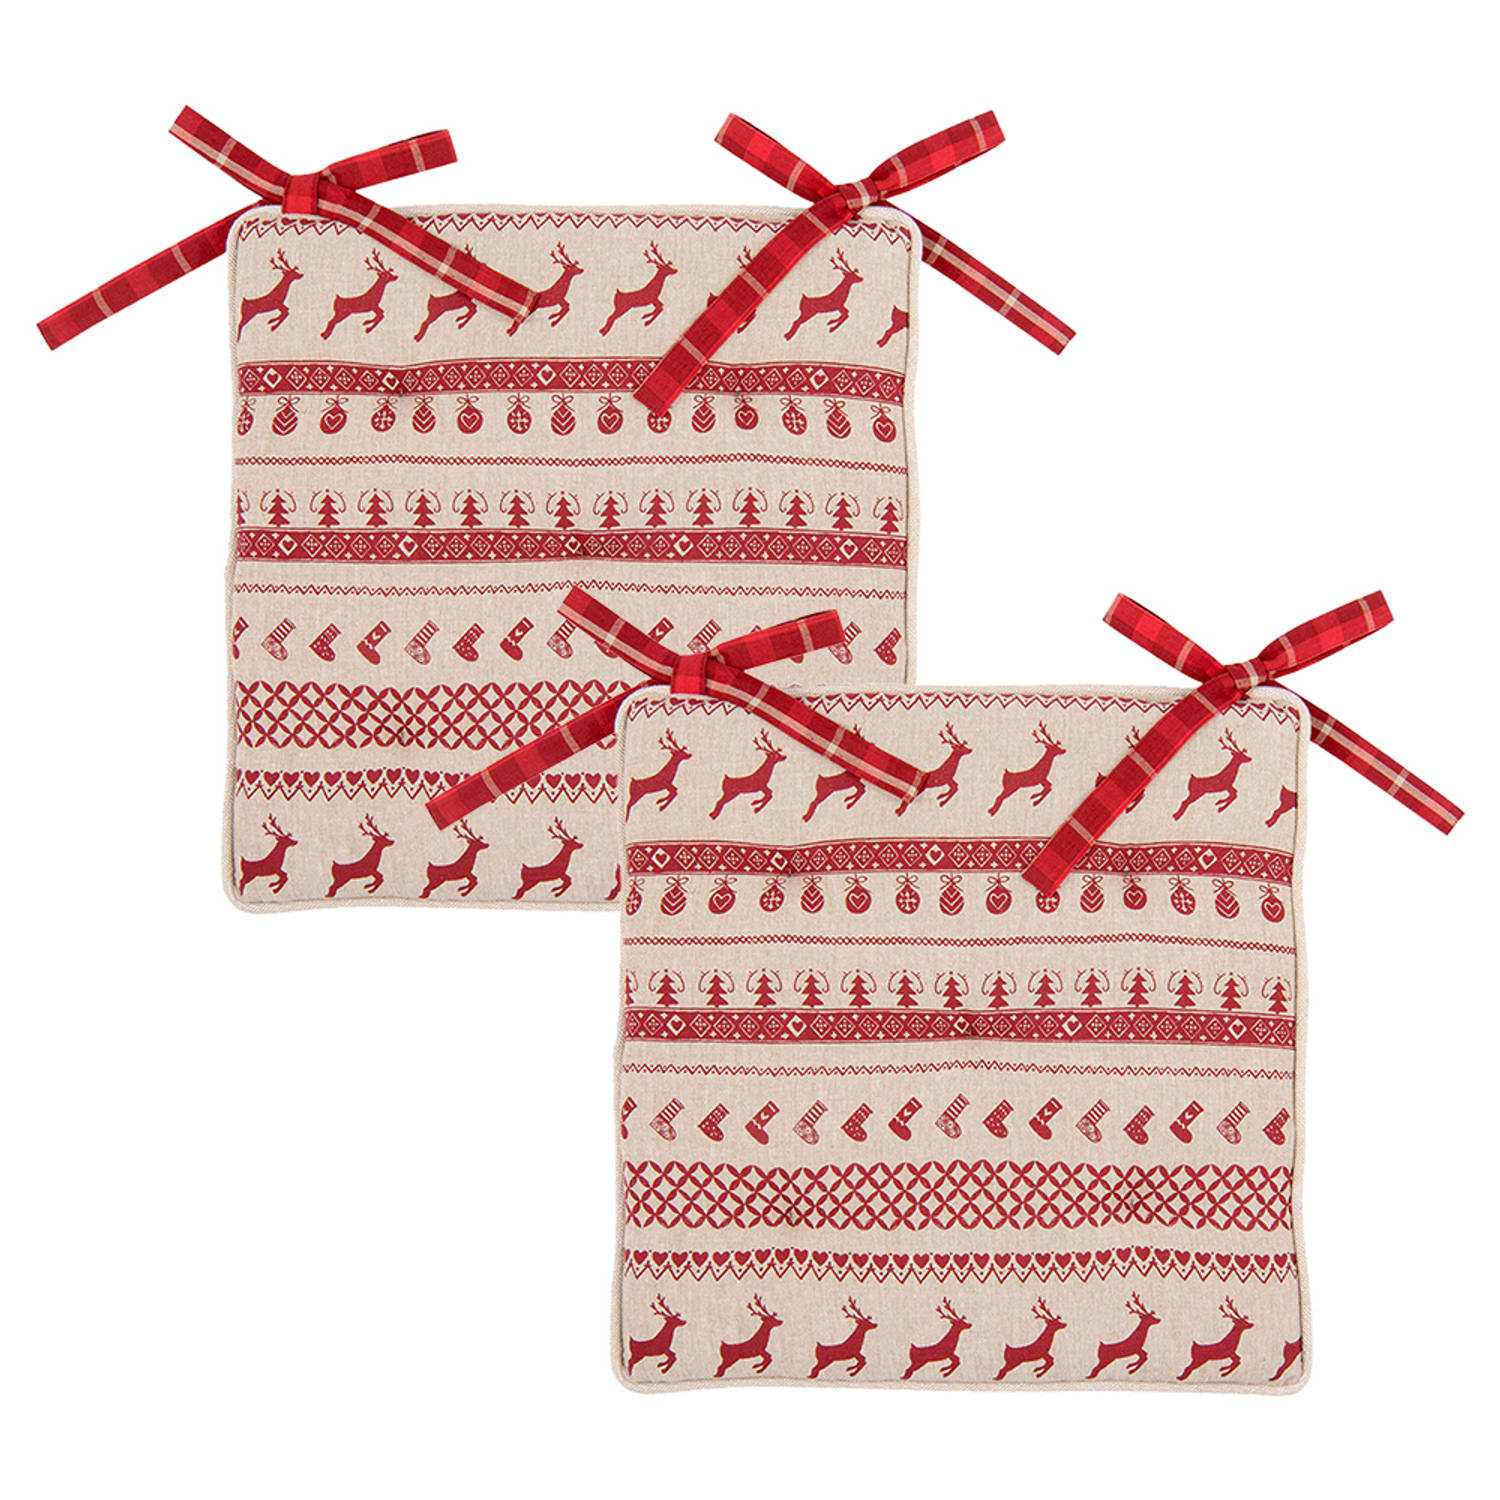 HAES DECO - Set van 2 Sierkussens - formaat 40x40x4 cm - kleuren Rood / Beige - van 100% Katoen - Collectie: Nordic Christmas - Stoelkussen, Sierkussen